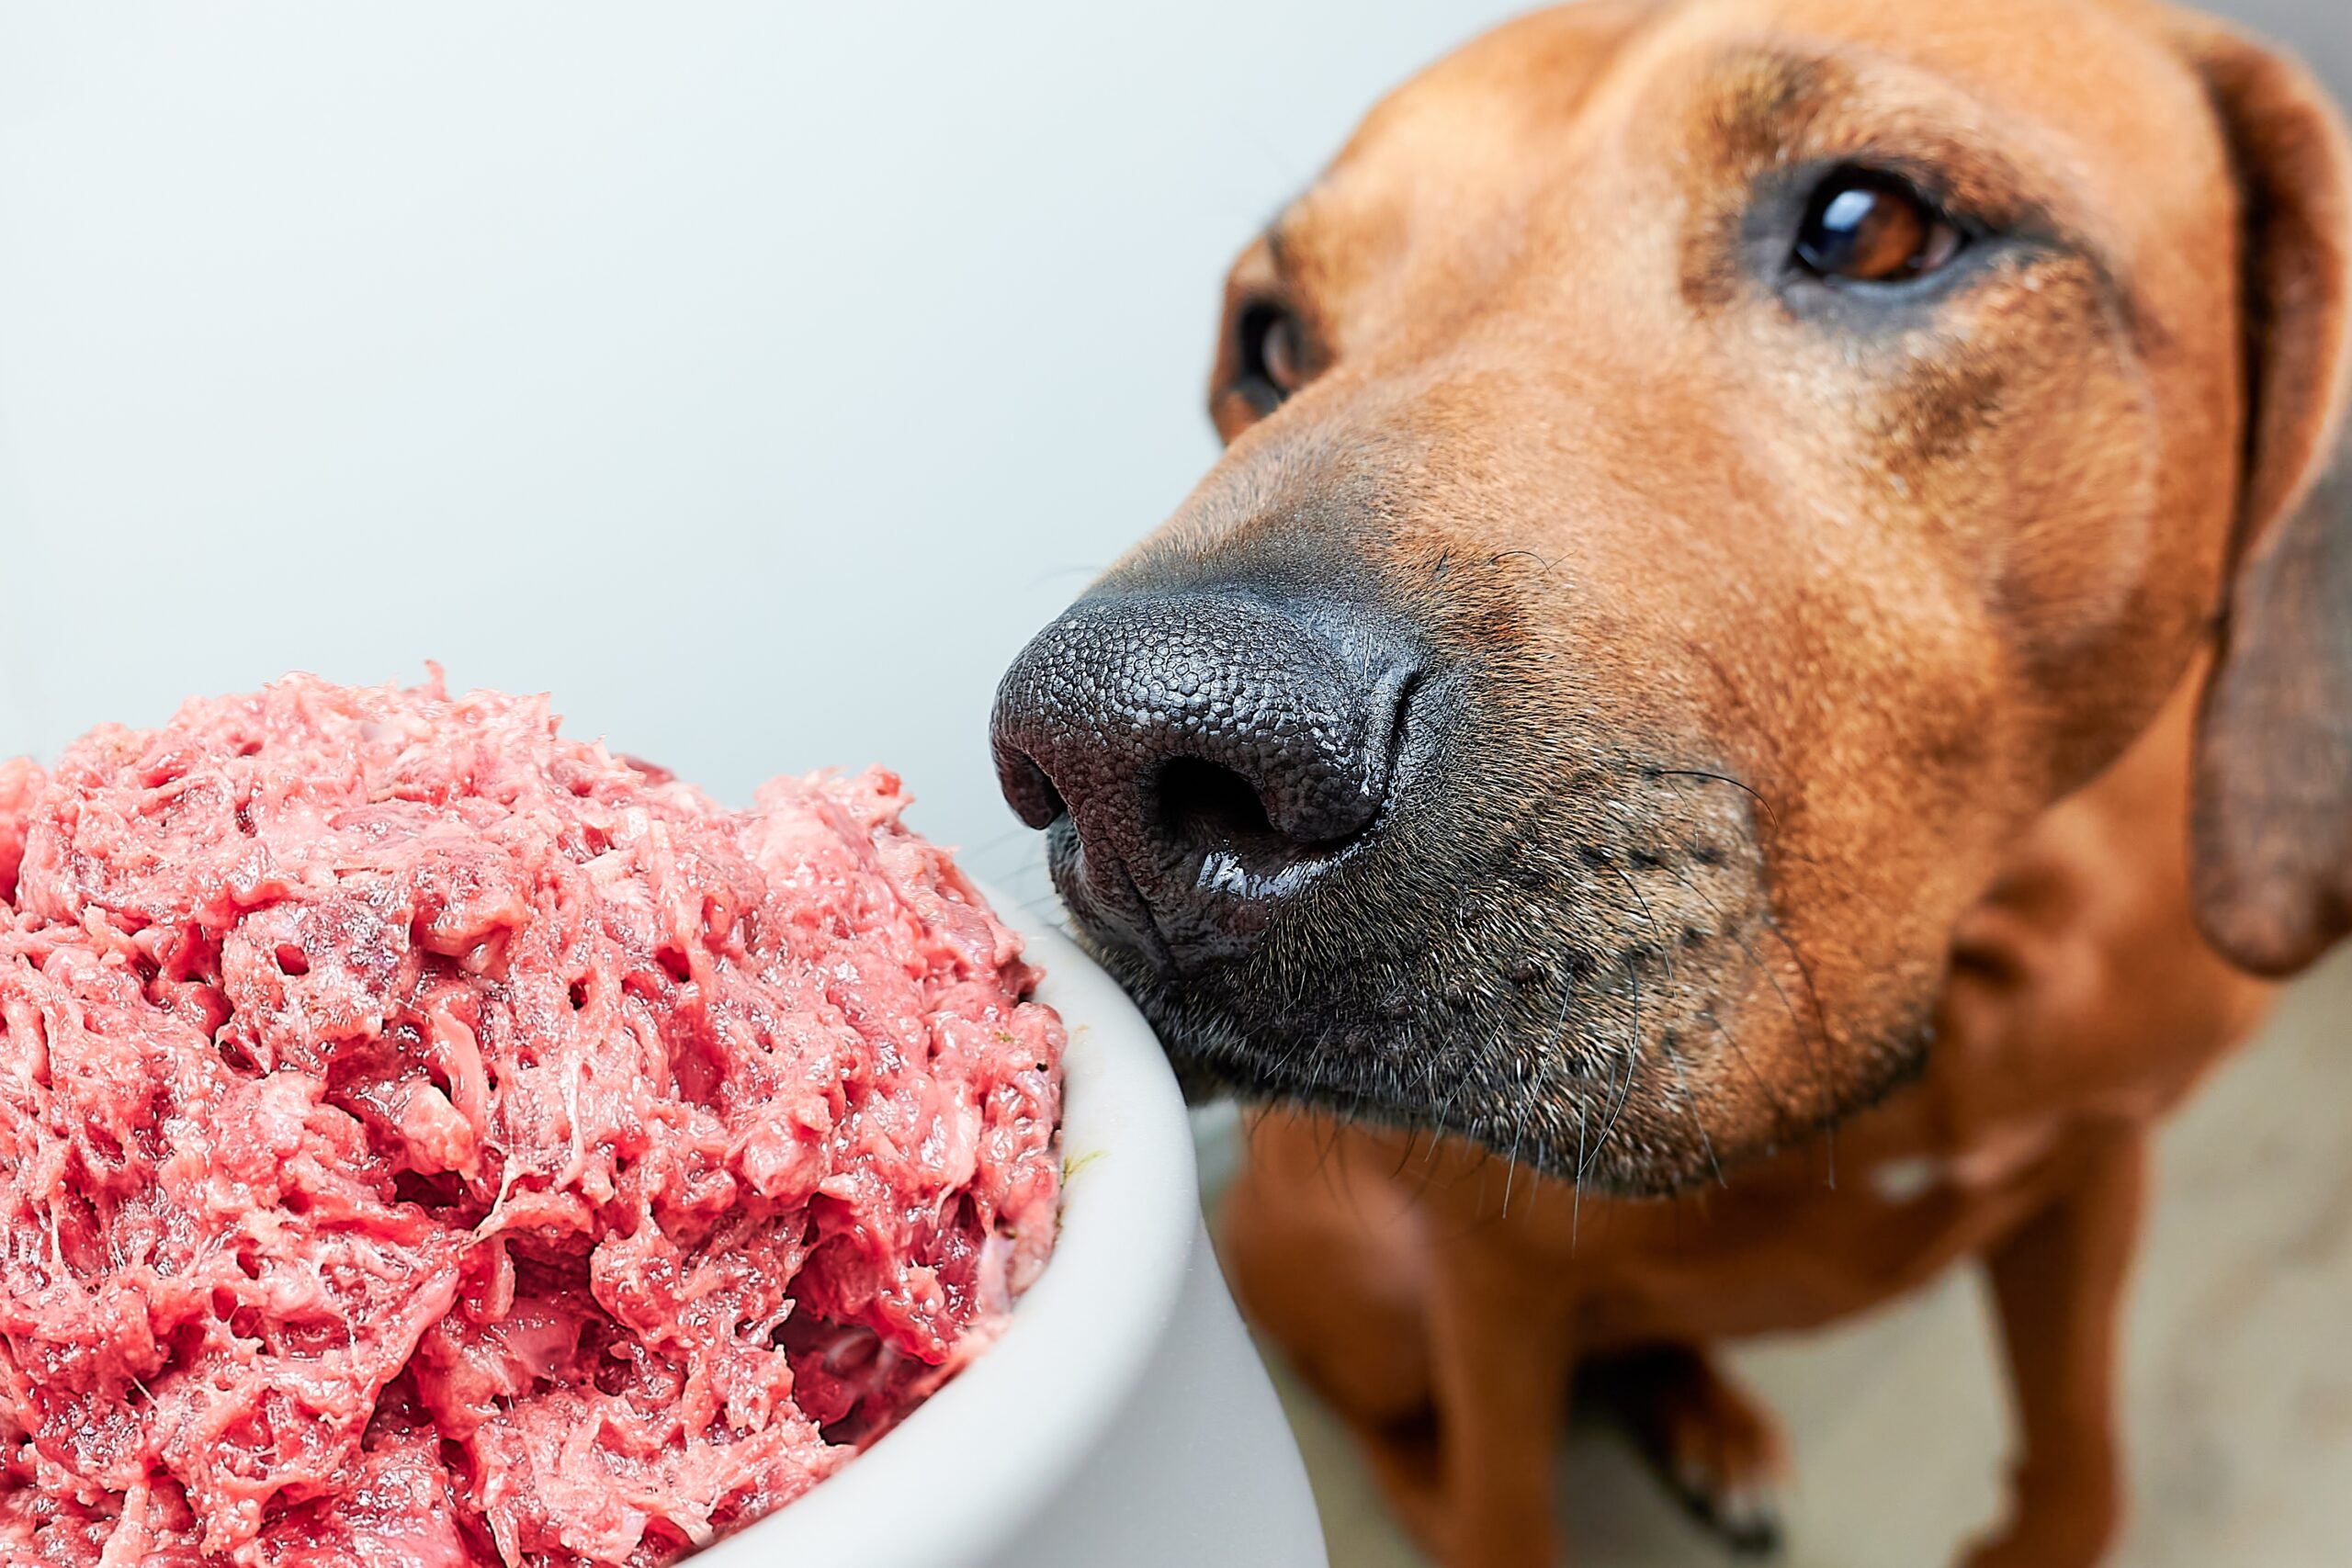 Nourrir son chien avec de la viande crue pourrait propager des souches résistantes de bactéries dangereuses